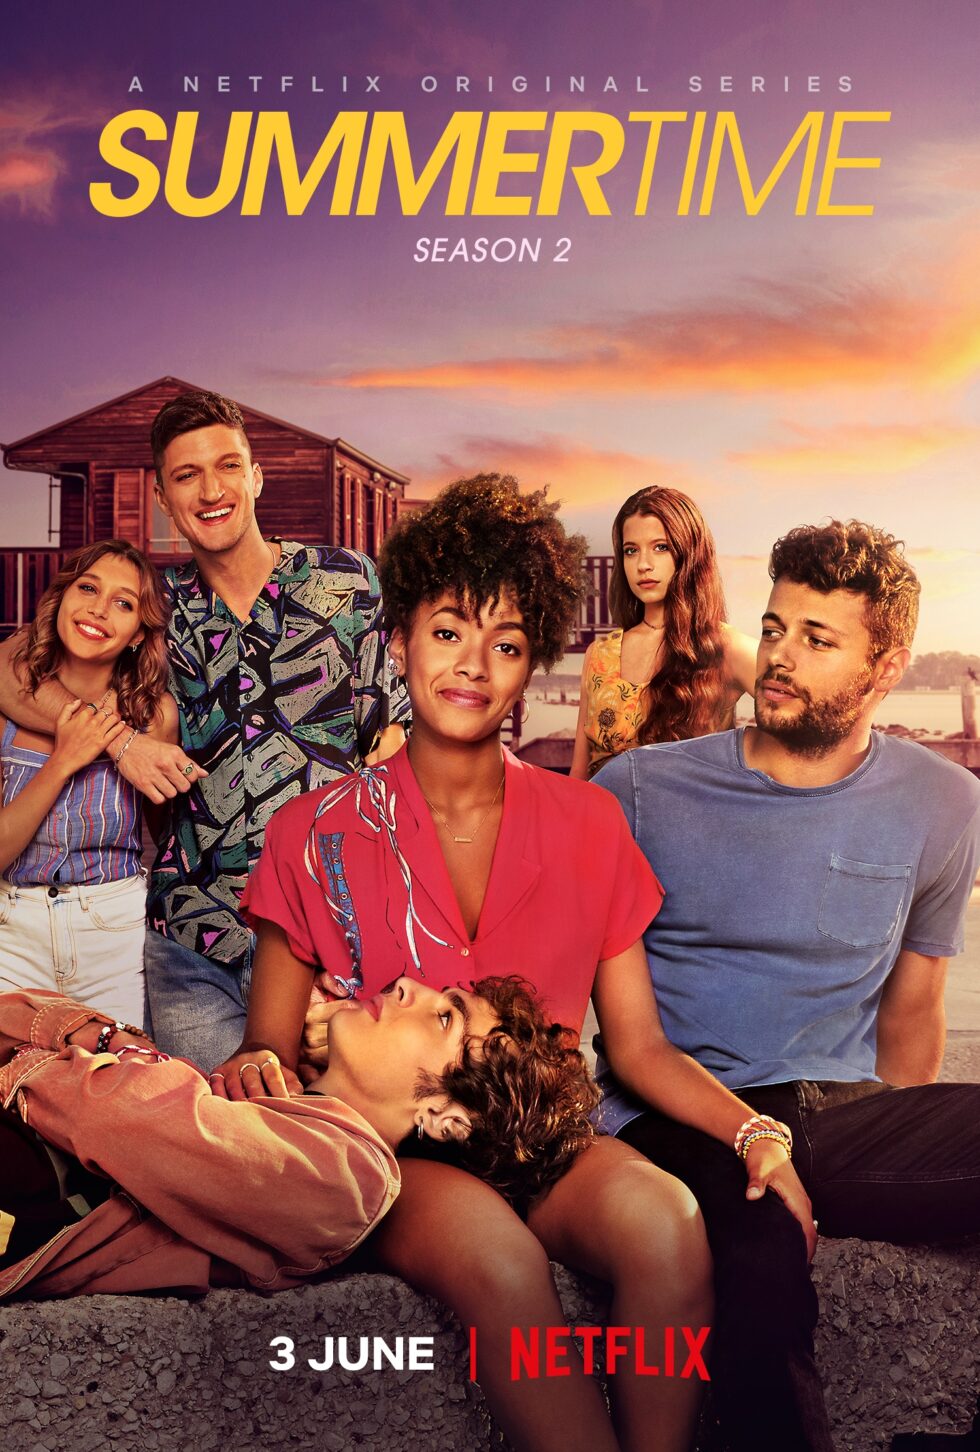 Netflix’s ‘Summertime’ Season 2 Releases on June 3rd